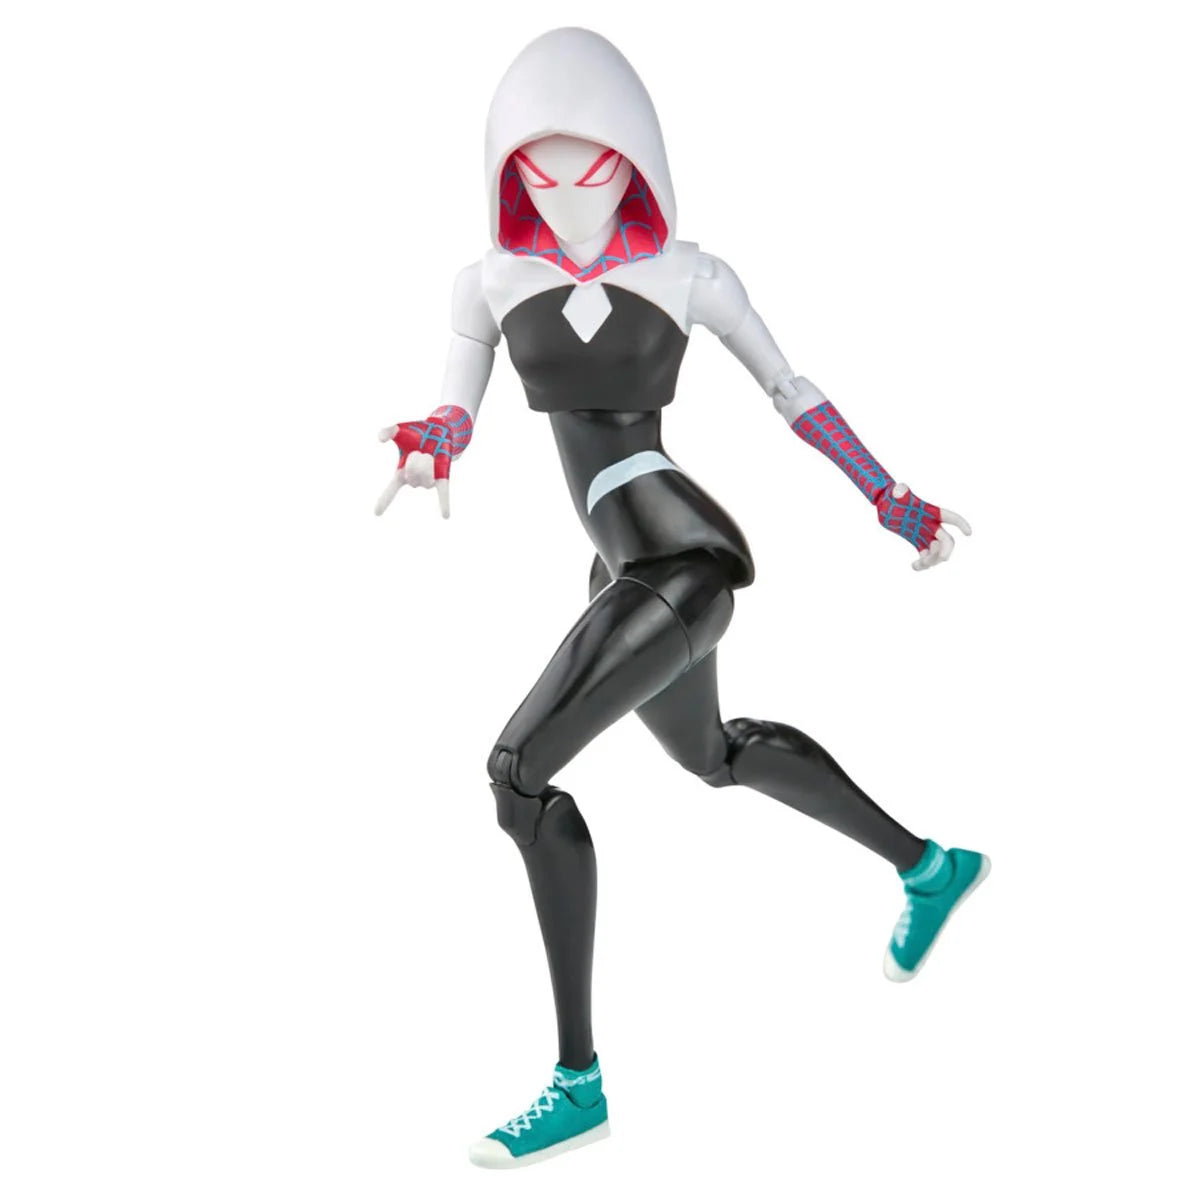 Marvel Legends Spider-Man Across The Spider-Verse - Spider-Gwen Action Figure Toy